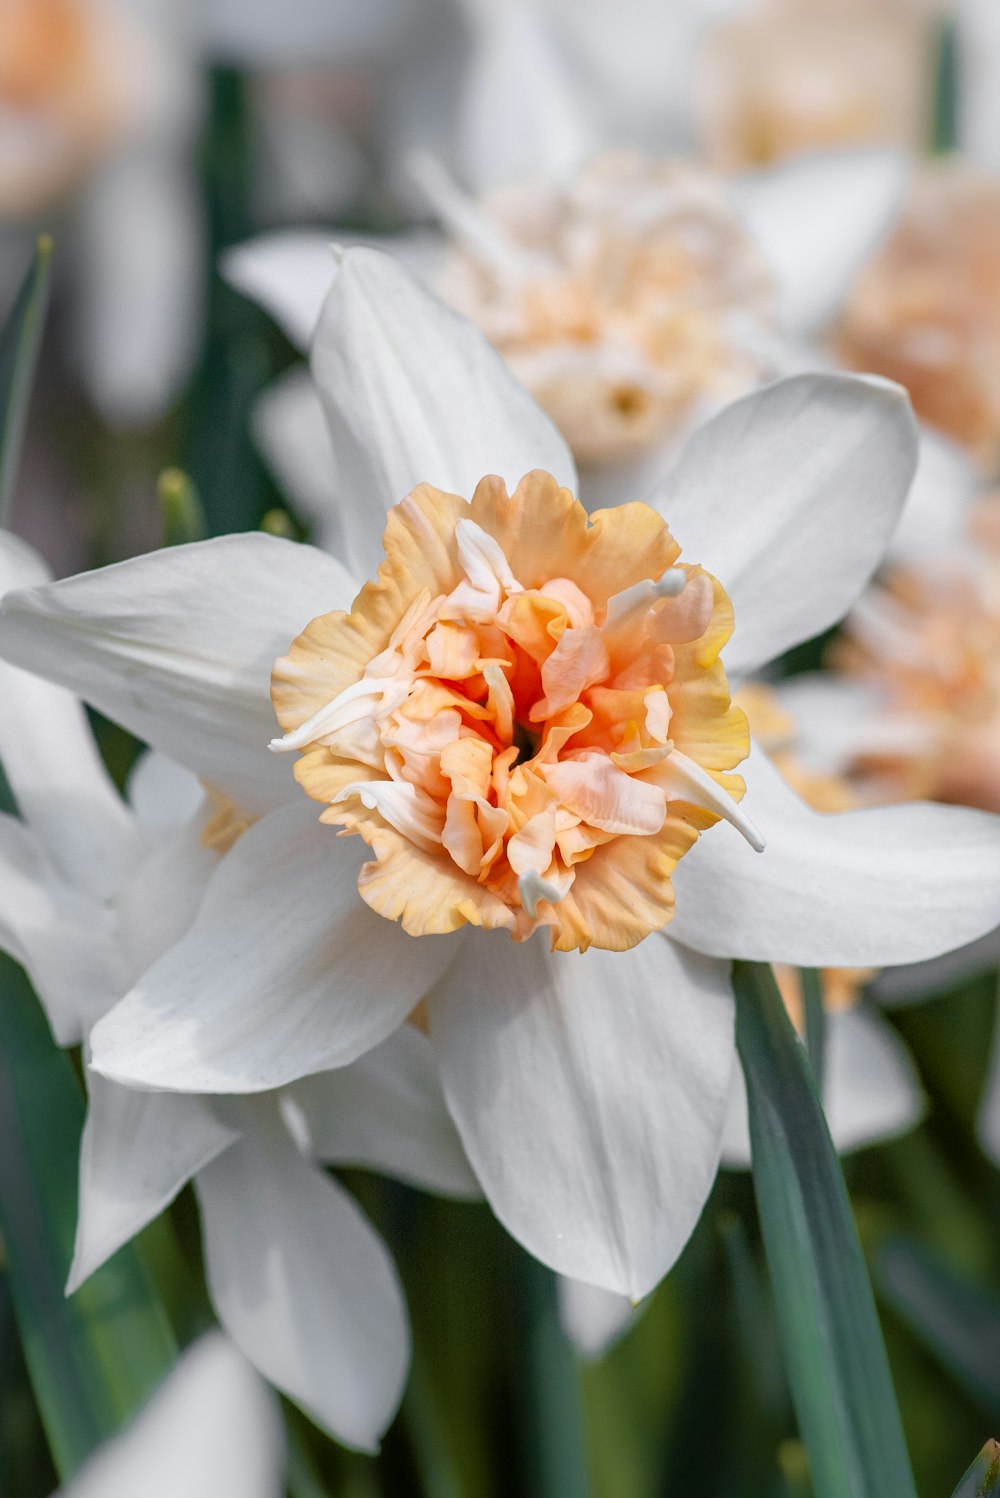 flor blanca y naranja en macro plano